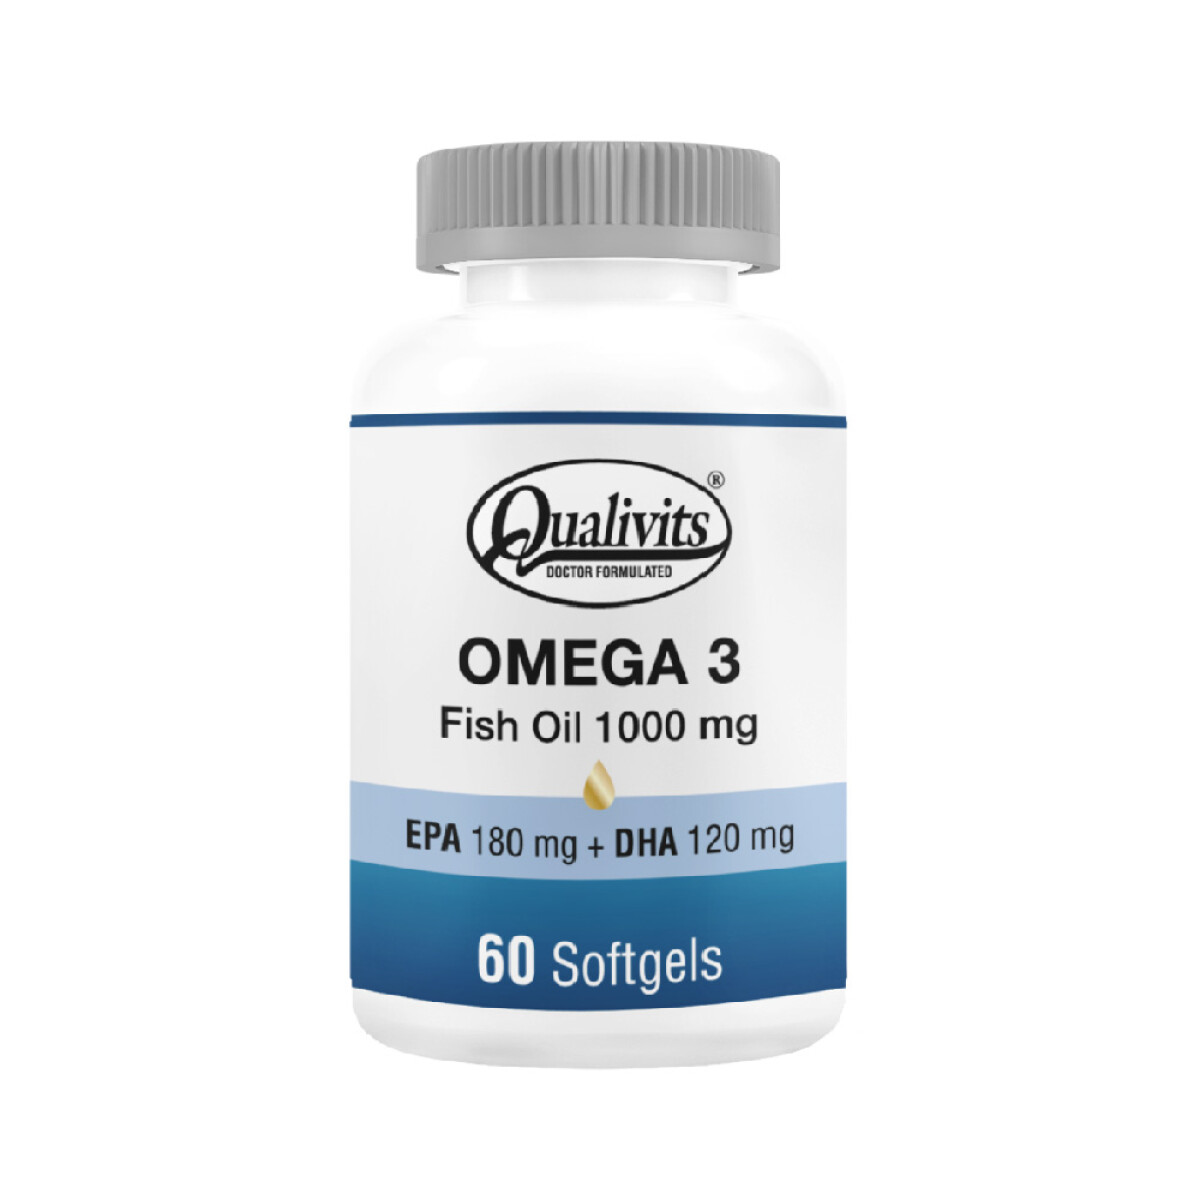 OMEGA 3 - FISH OIL QUALIVITS 1000 mg x 60 Sogtels 